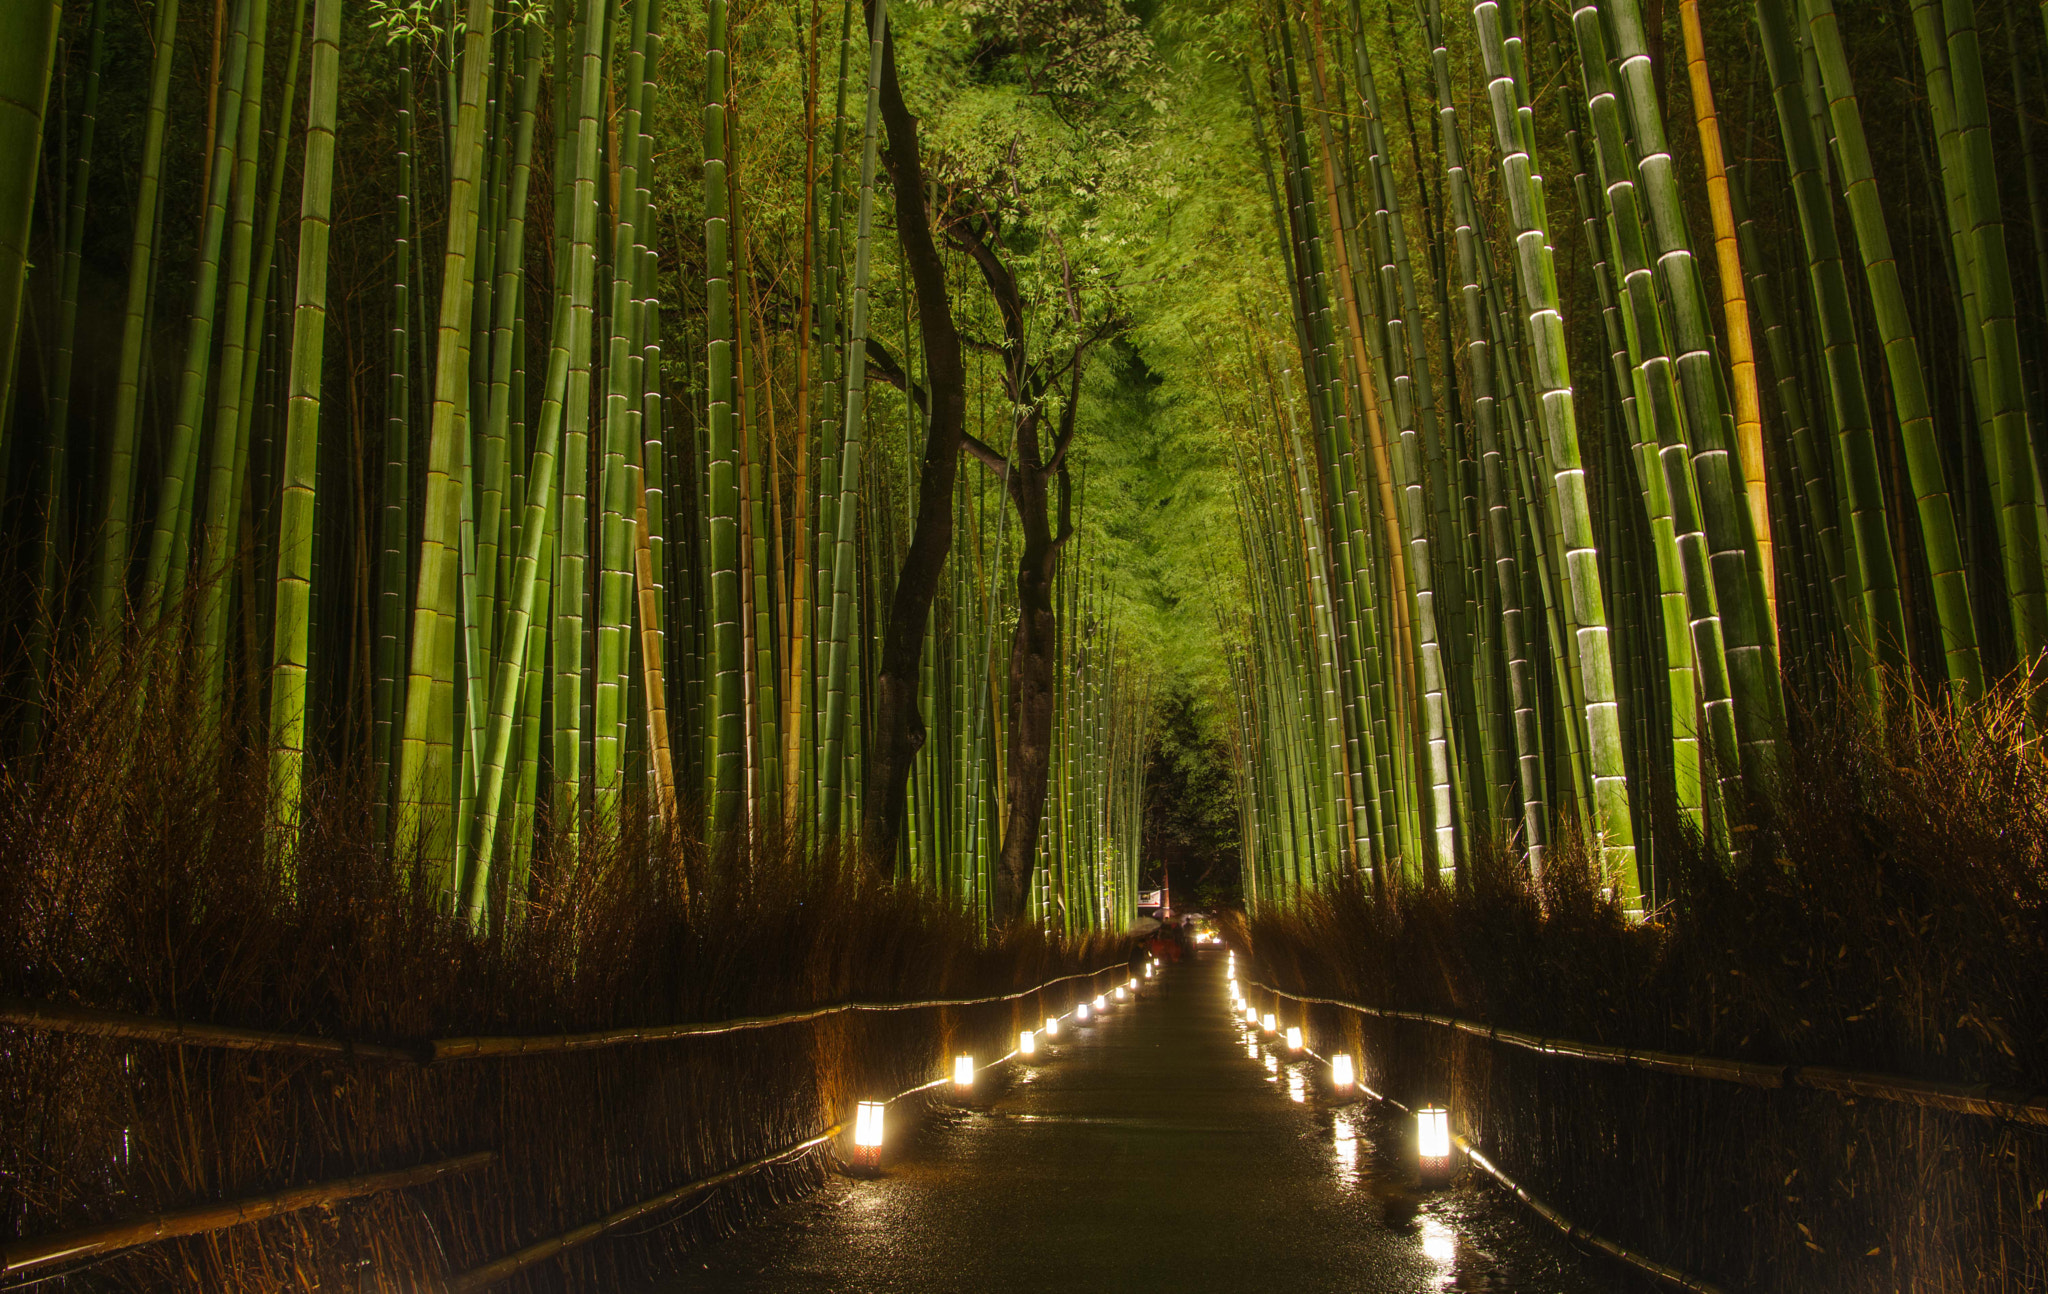 Pentax K-3 sample photo. Bosque de bambú de arashiyama photography